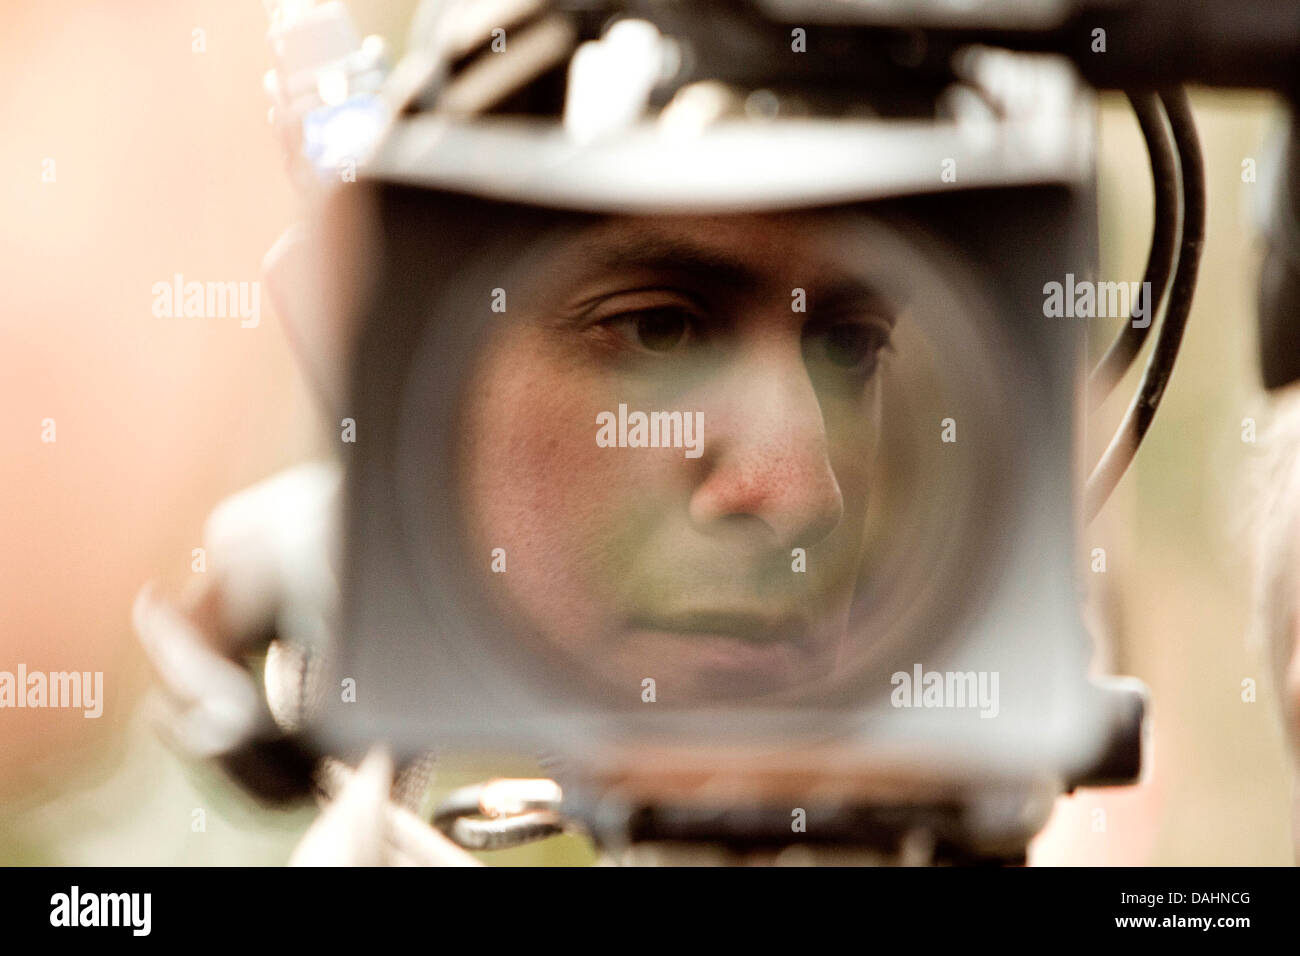 Ed Miliband spiegelt sich in einer TV-Kamera-Objektiv Stockfoto